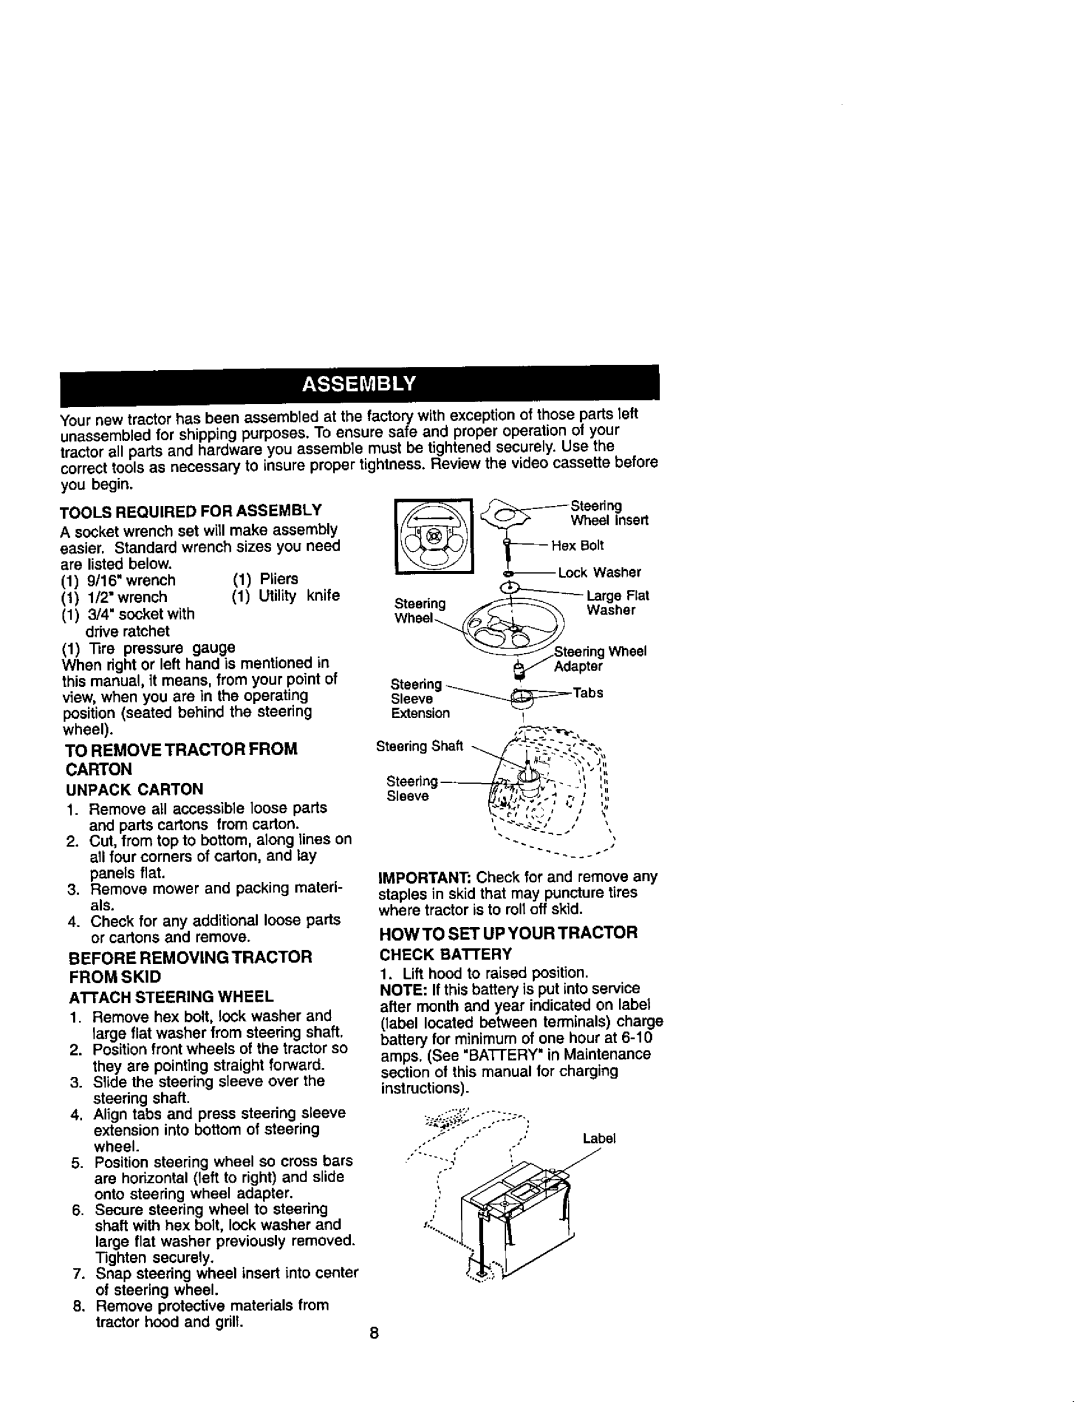 Craftsman 917.27499 manual Adapter, Ho2 ,ose, S,or,ng a, sleeve / , IJ * ,4 ..,- ., ,,,u 